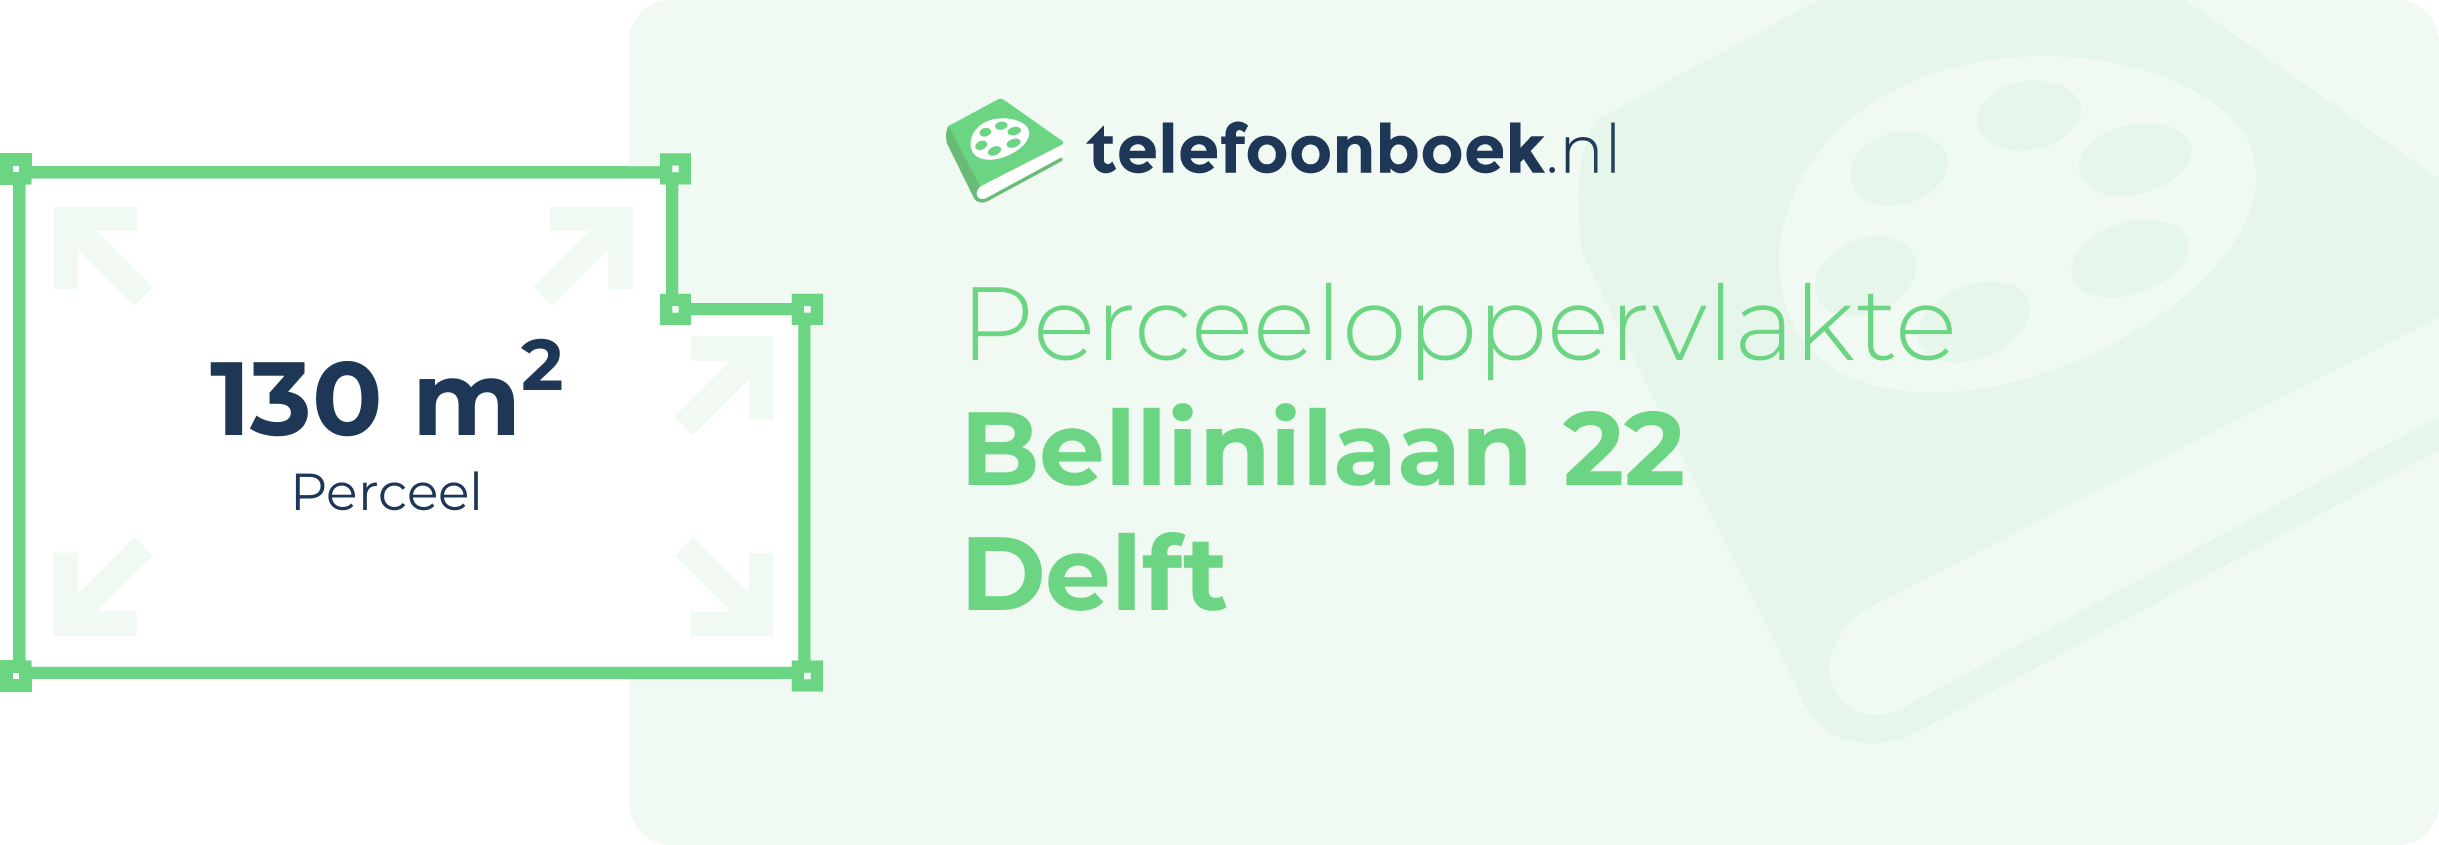 Perceeloppervlakte Bellinilaan 22 Delft